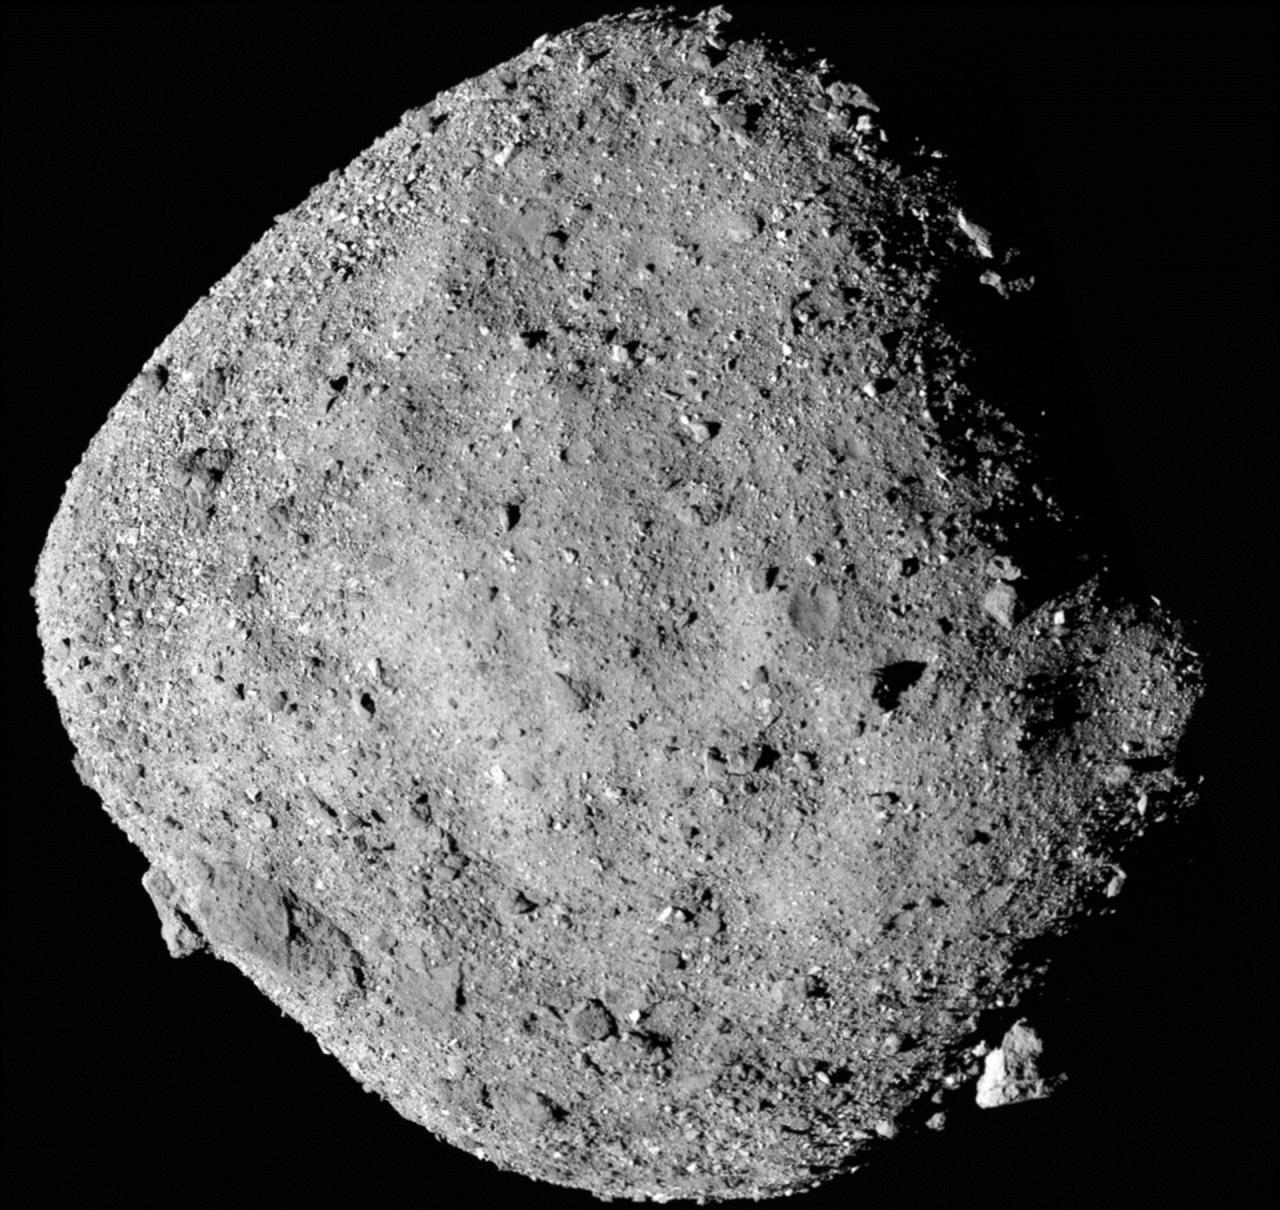 Imagen del asteroide Bennu compuesta por 12 imágenes PolyCam recogidas el 2 de diciembre de 2018 por la nave espacial OSIRIS-REx a una distancia de 24 km. Crédito: NASA/Goddard/Universidad de Arizona.